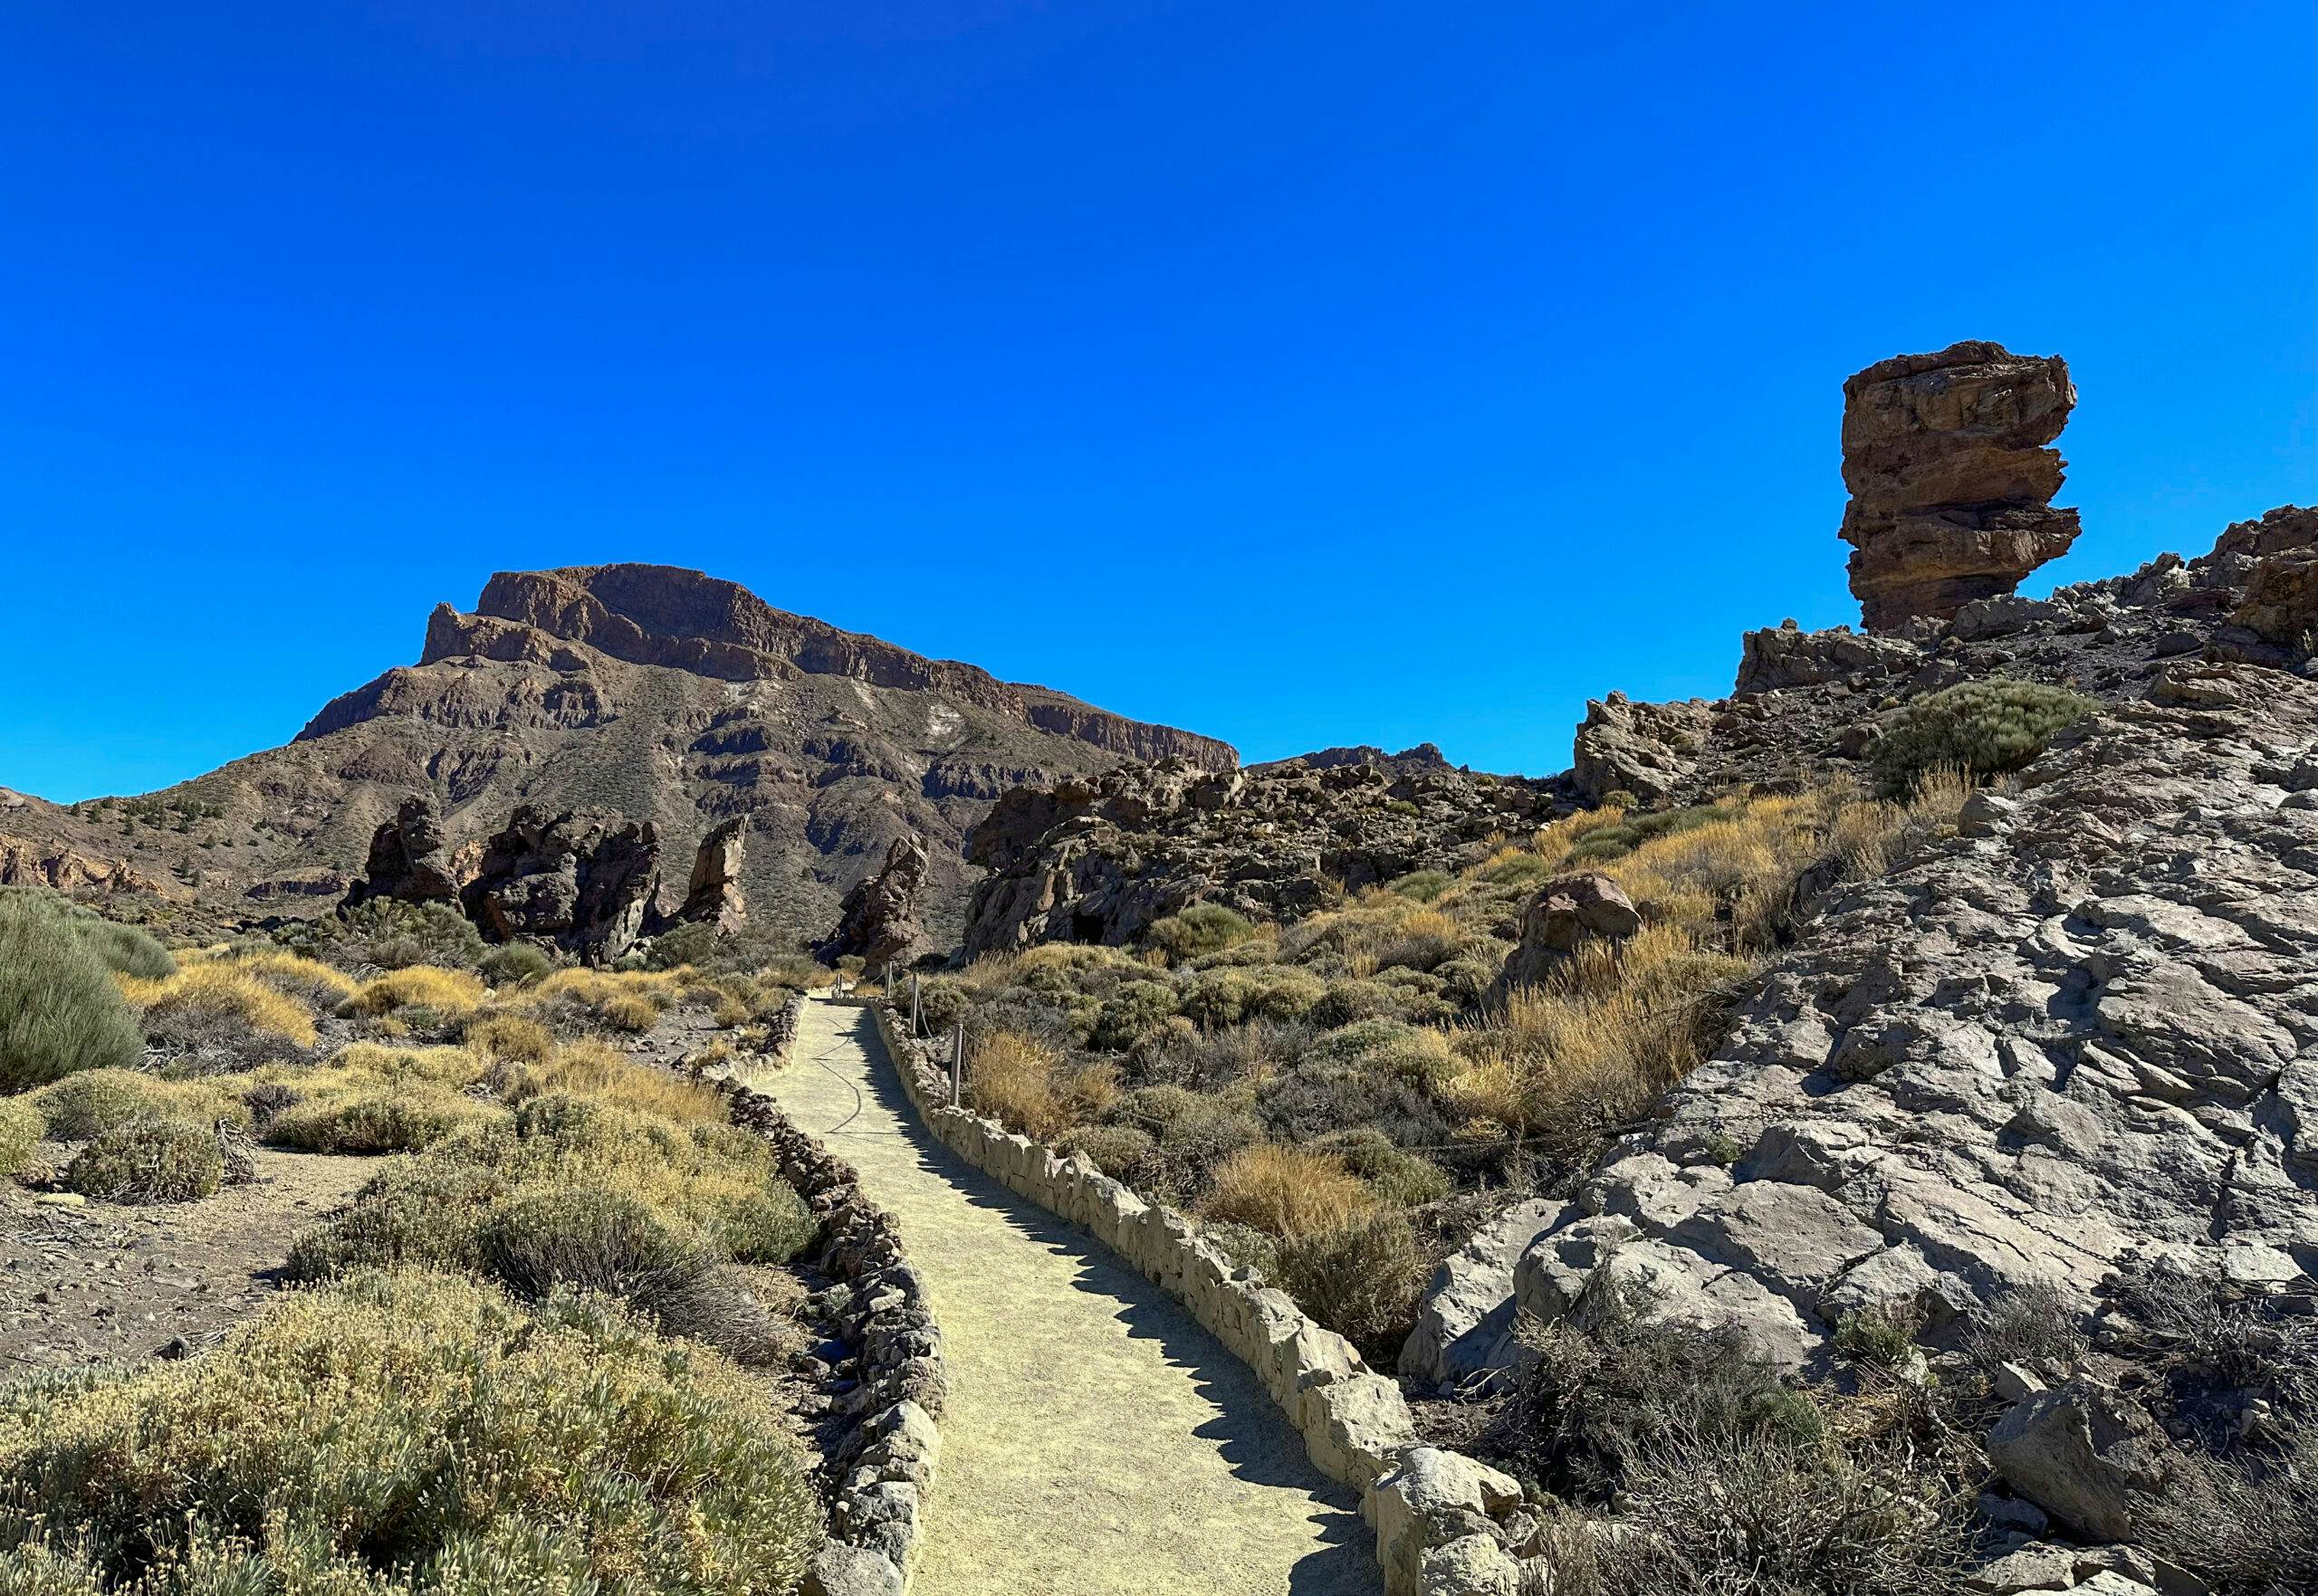 Hiking trail below the Roques de García